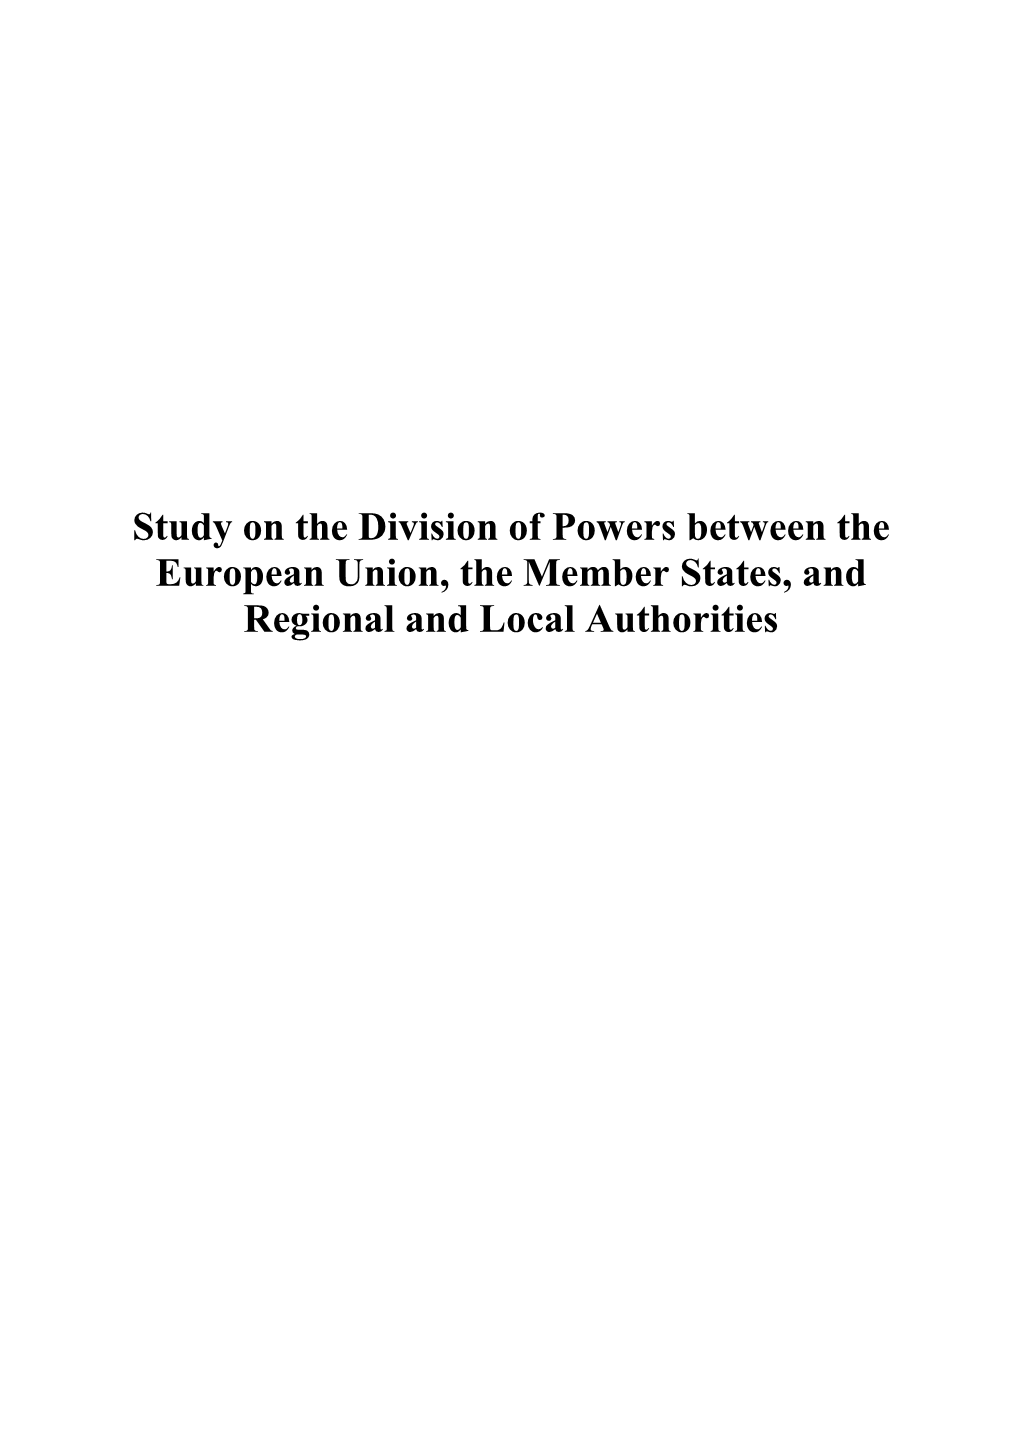 Study-Division-Powers-EN.Pdf